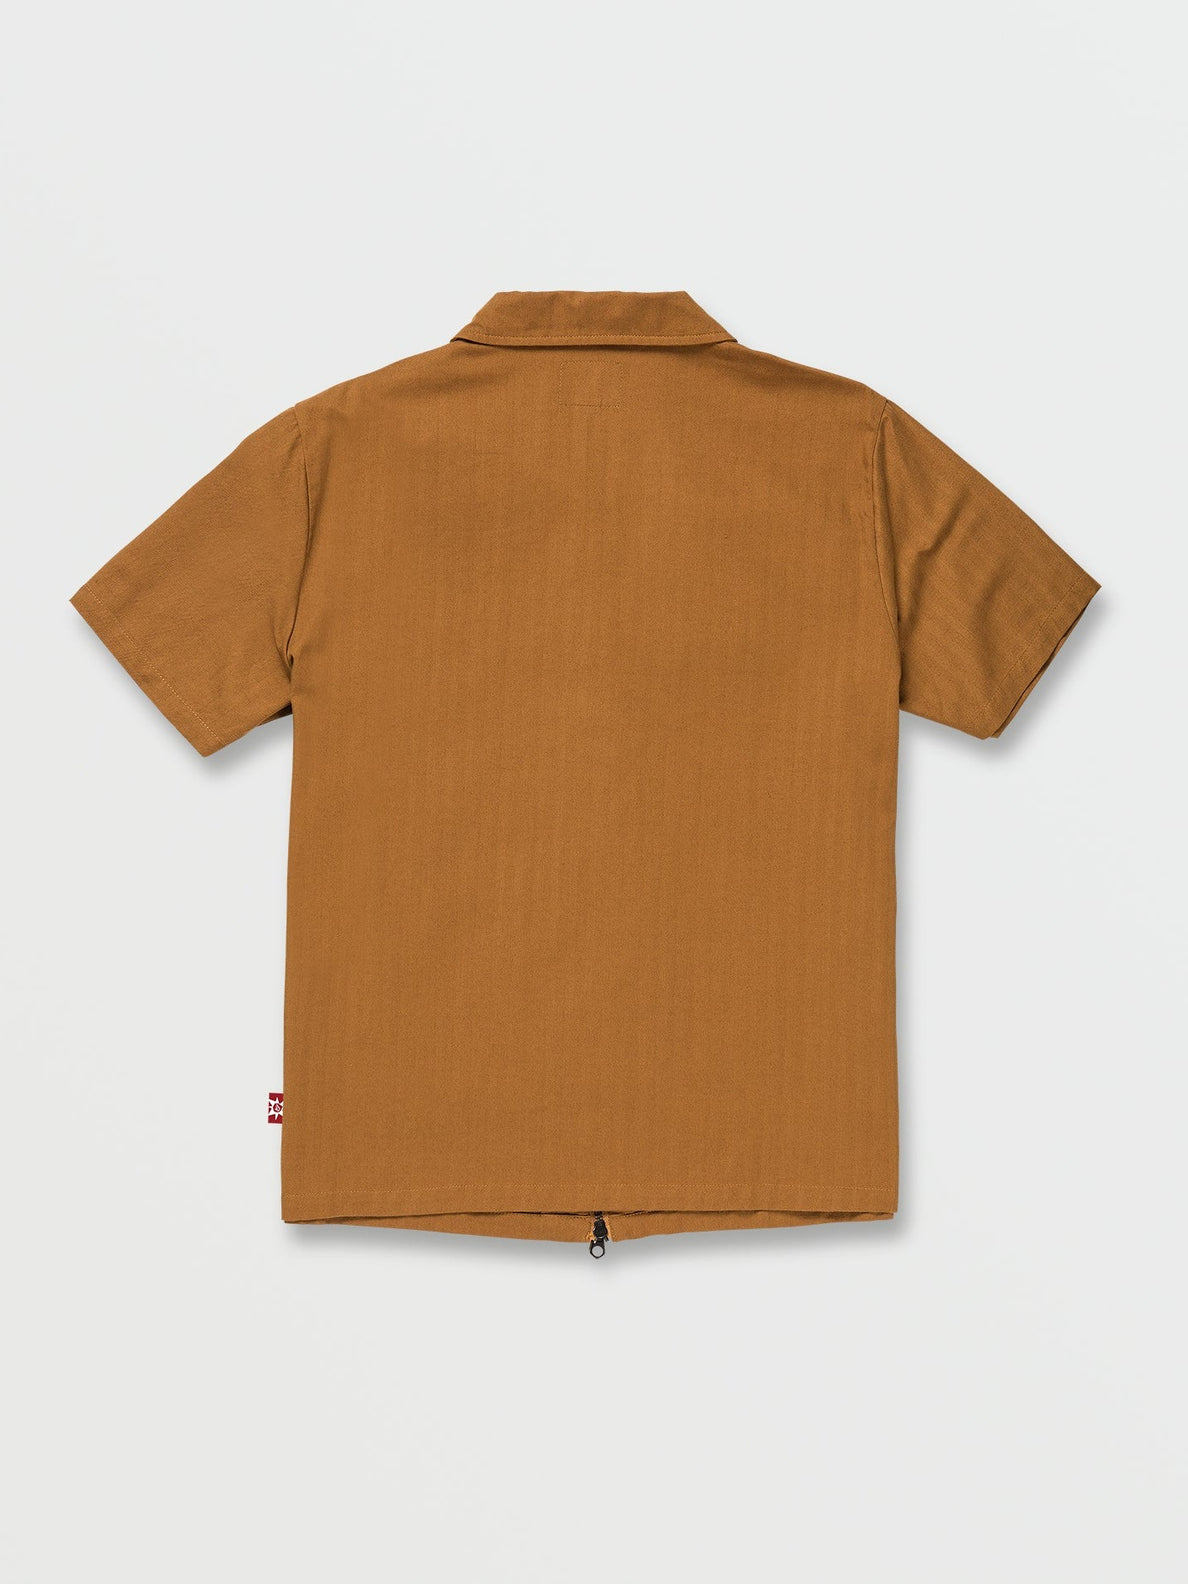 Tokyo True Woven Short Sleeve Shirt - Rubber – Volcom Japan